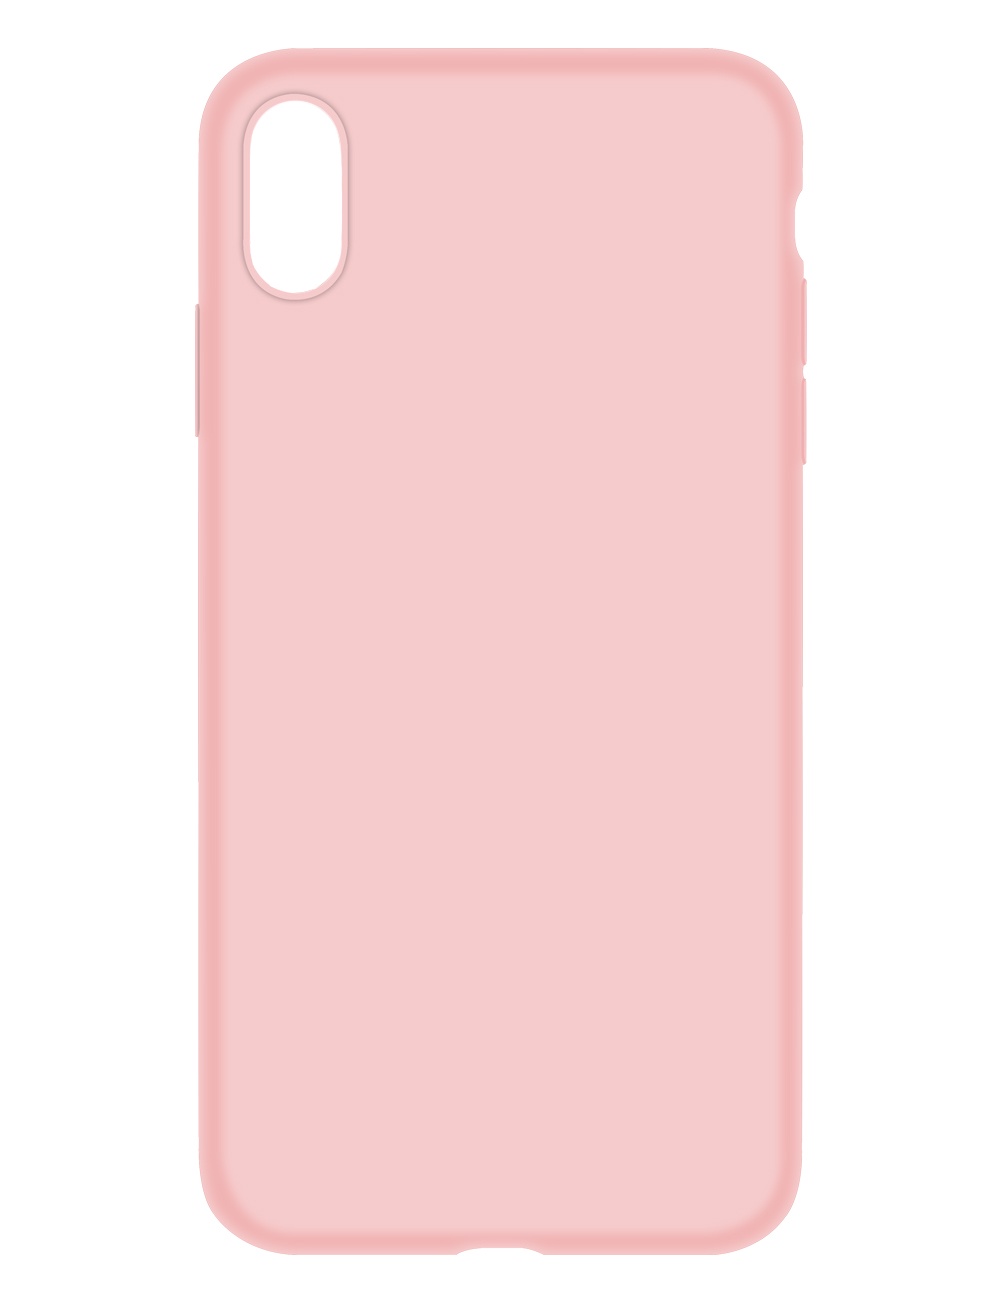 фото Чехол для сотового телефона Devia Nature Silicone Case для Apple iPhone X/XS, светло-розовый, розовый